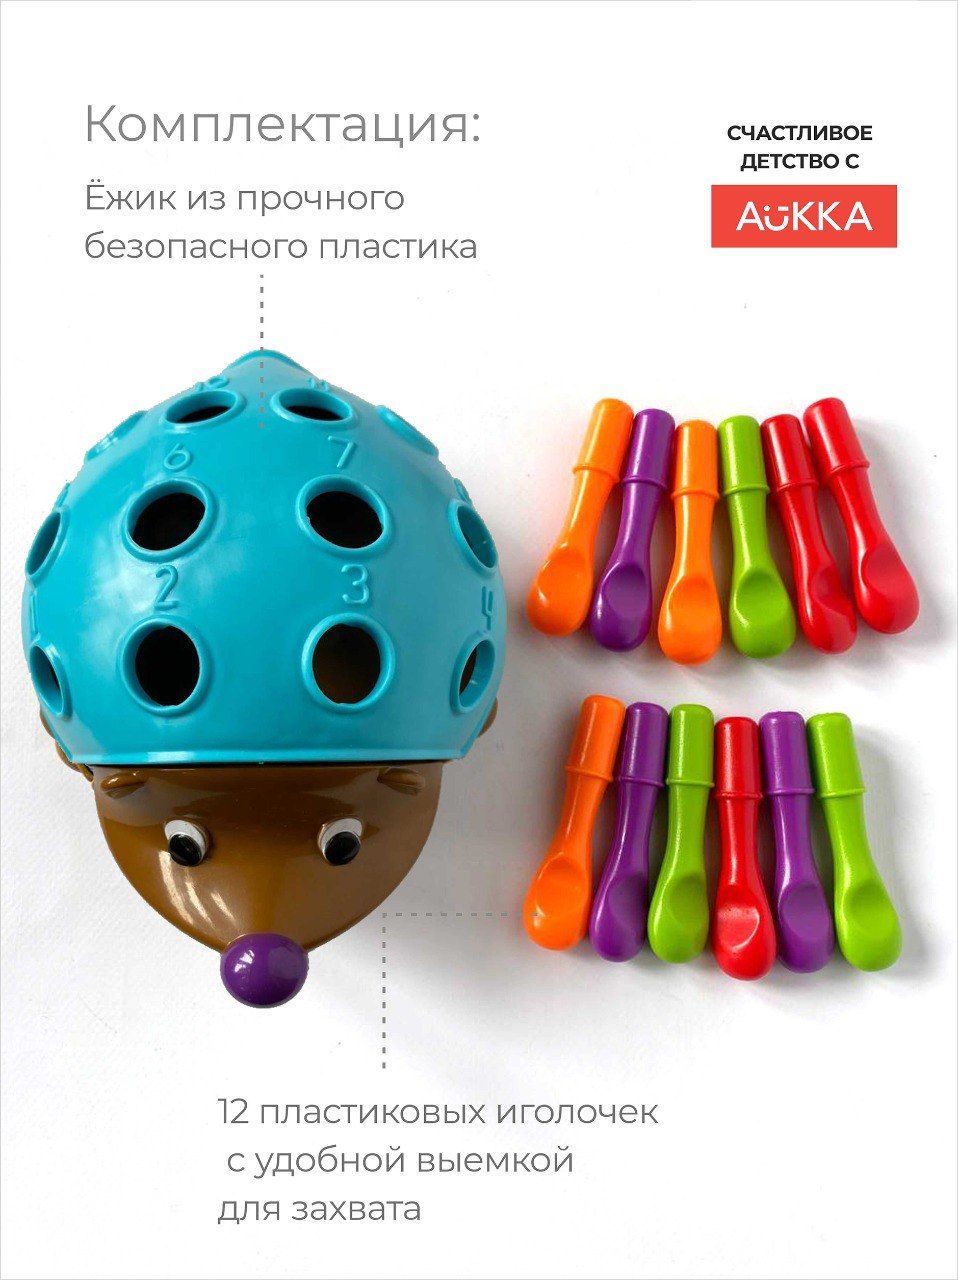 Развивающая детская игра AUKKA Ежик cортер по методике Монтессори для детей от 1 года - фото 2